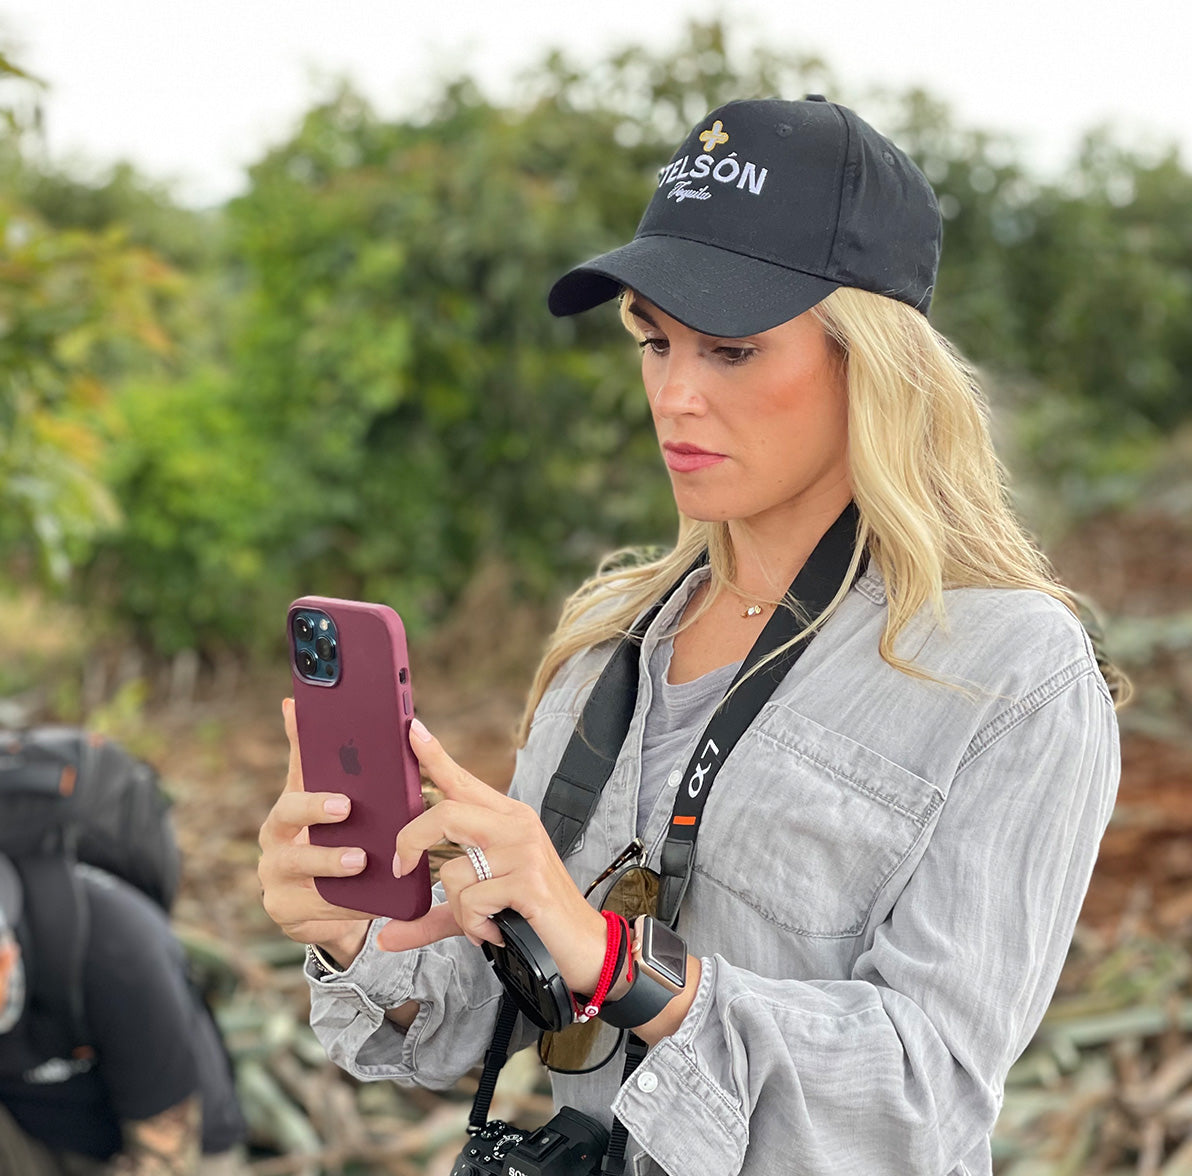 Pinkdoor founder, Lauren shooting video on her phone.